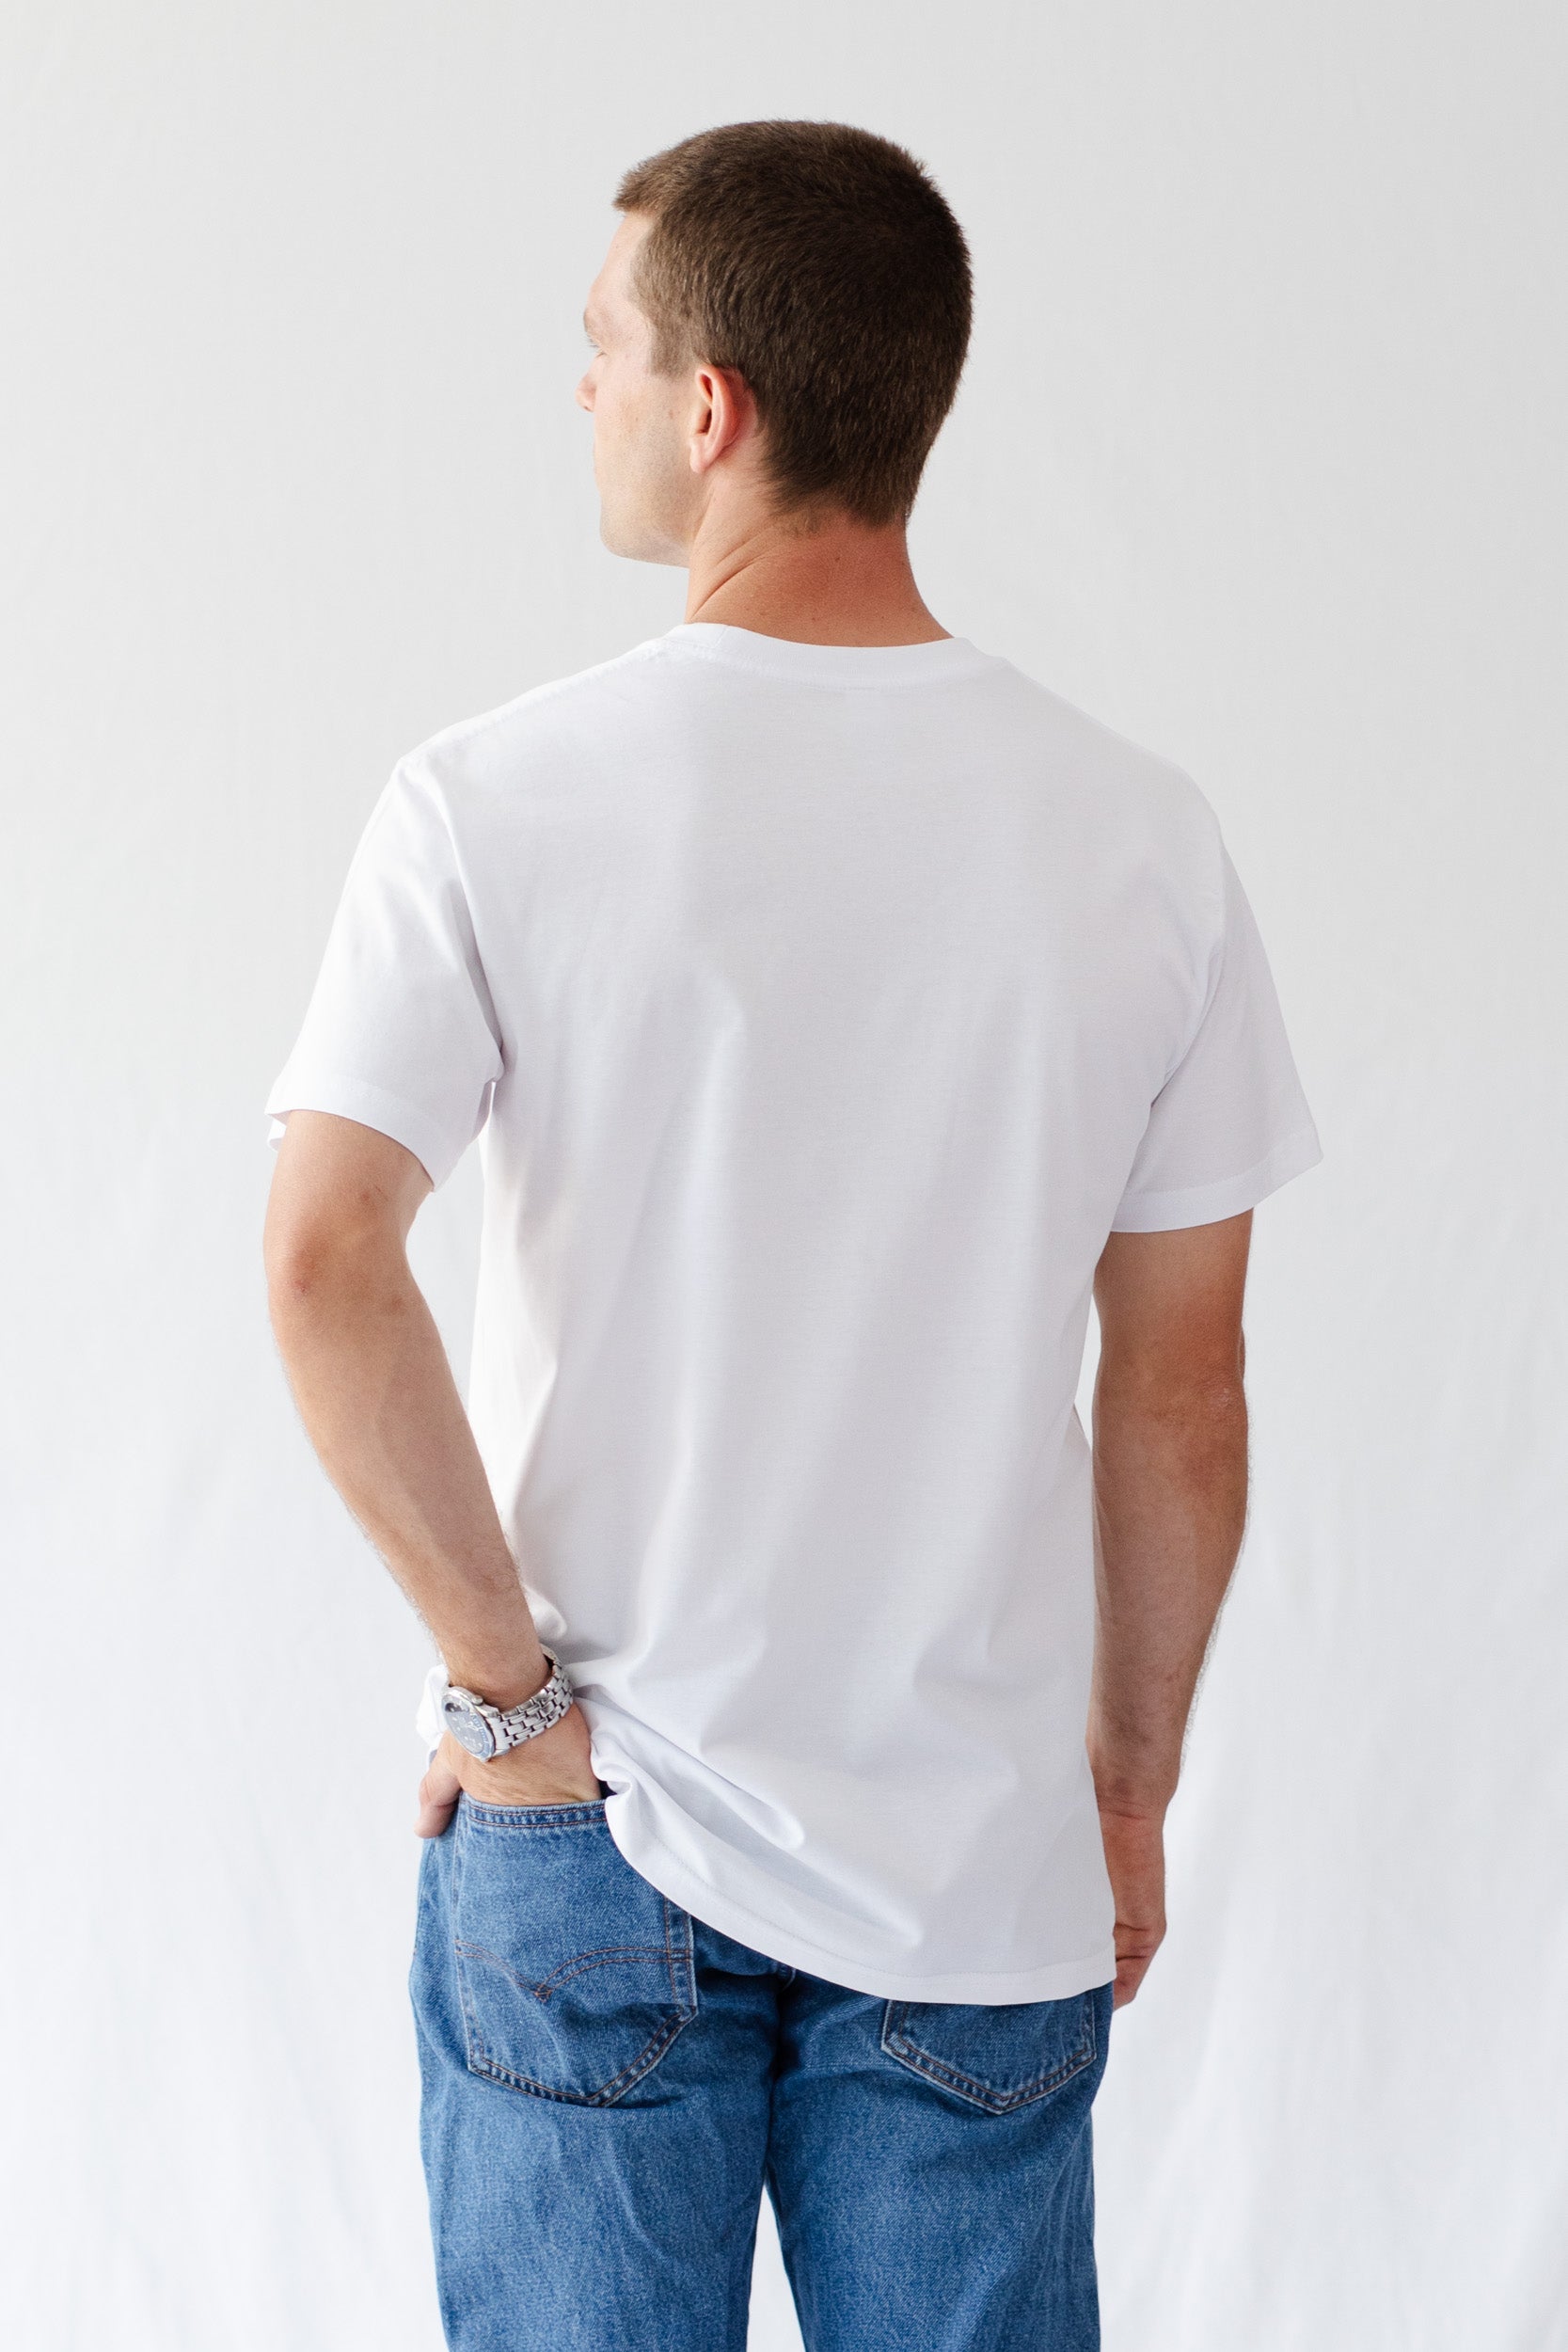 Camo Mens ENERGY T-Shirt - White